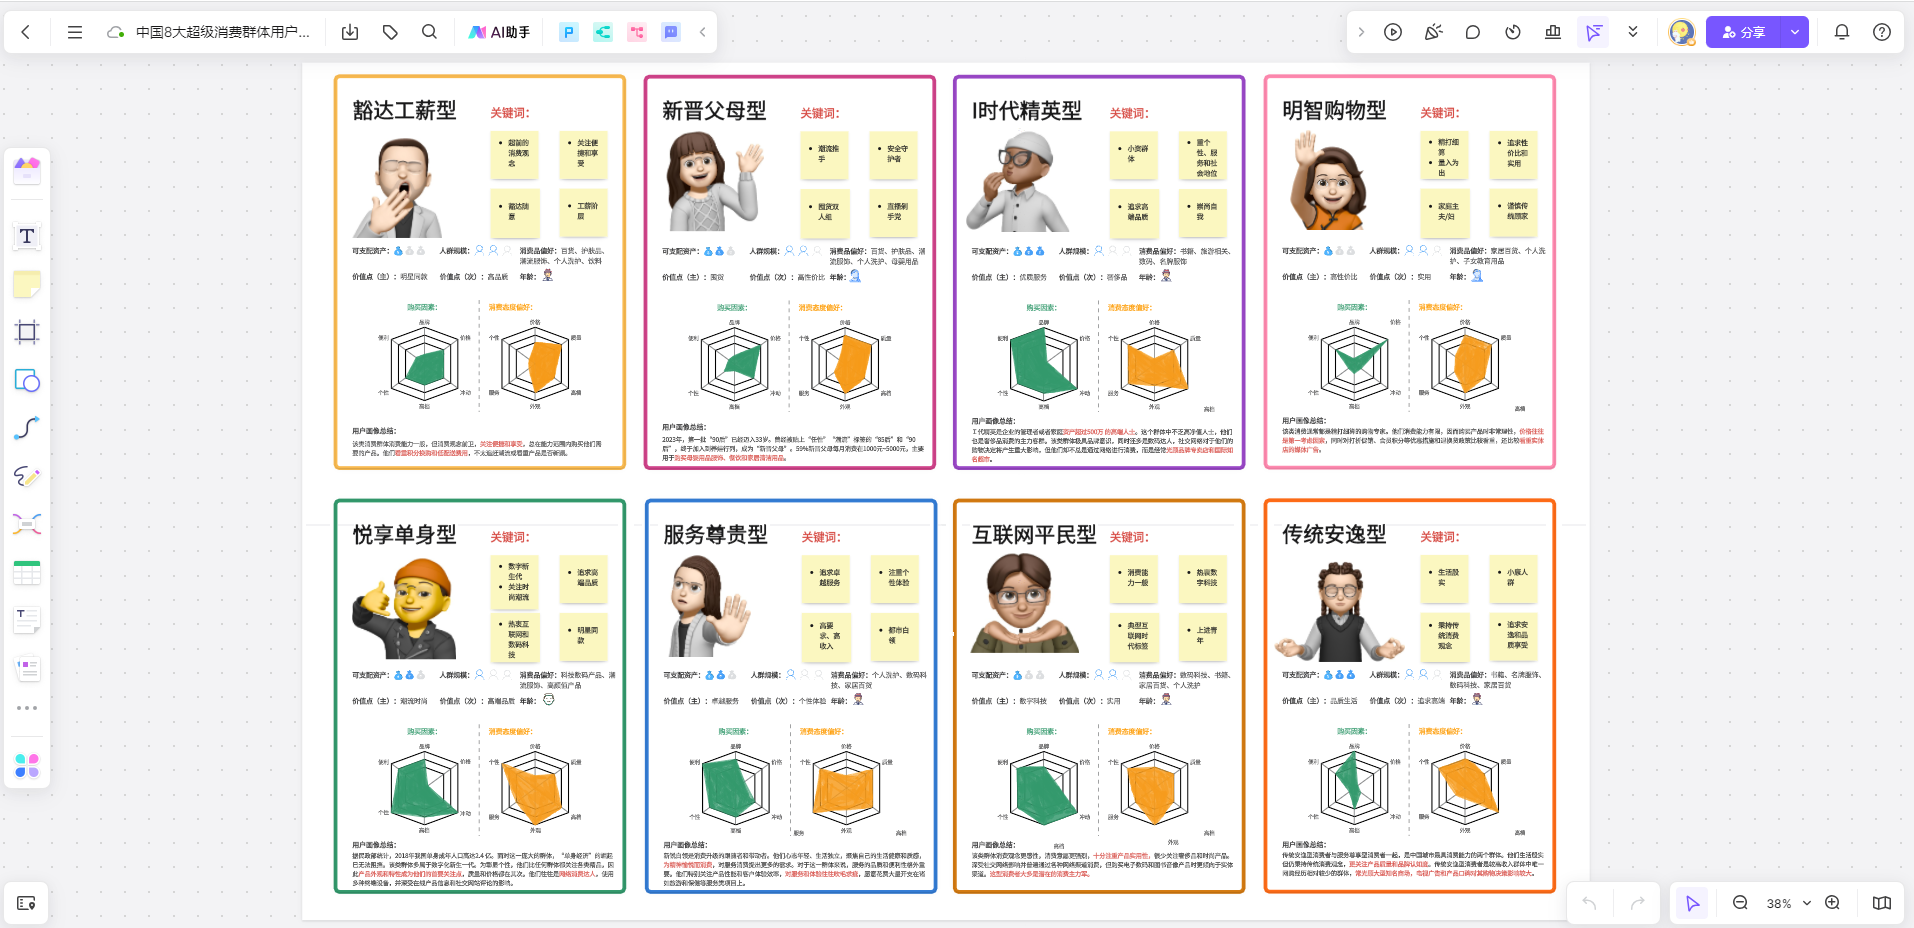 中国8大超级消费群体用户画像